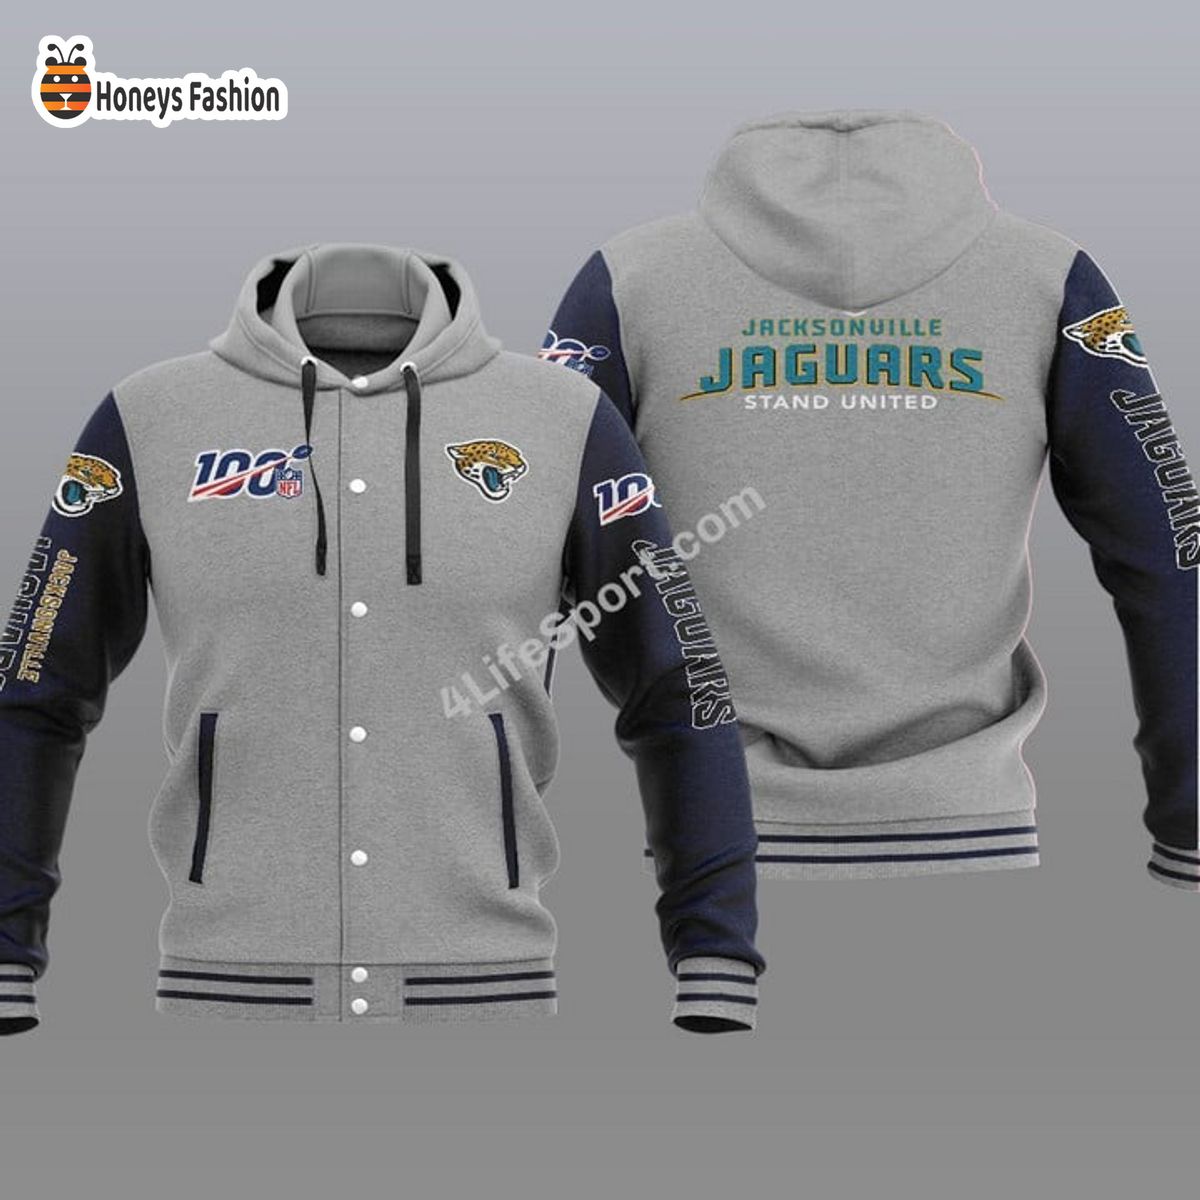 Jacksonville Jaguars 100th Anniversary Season Hooded Varsity Jacket